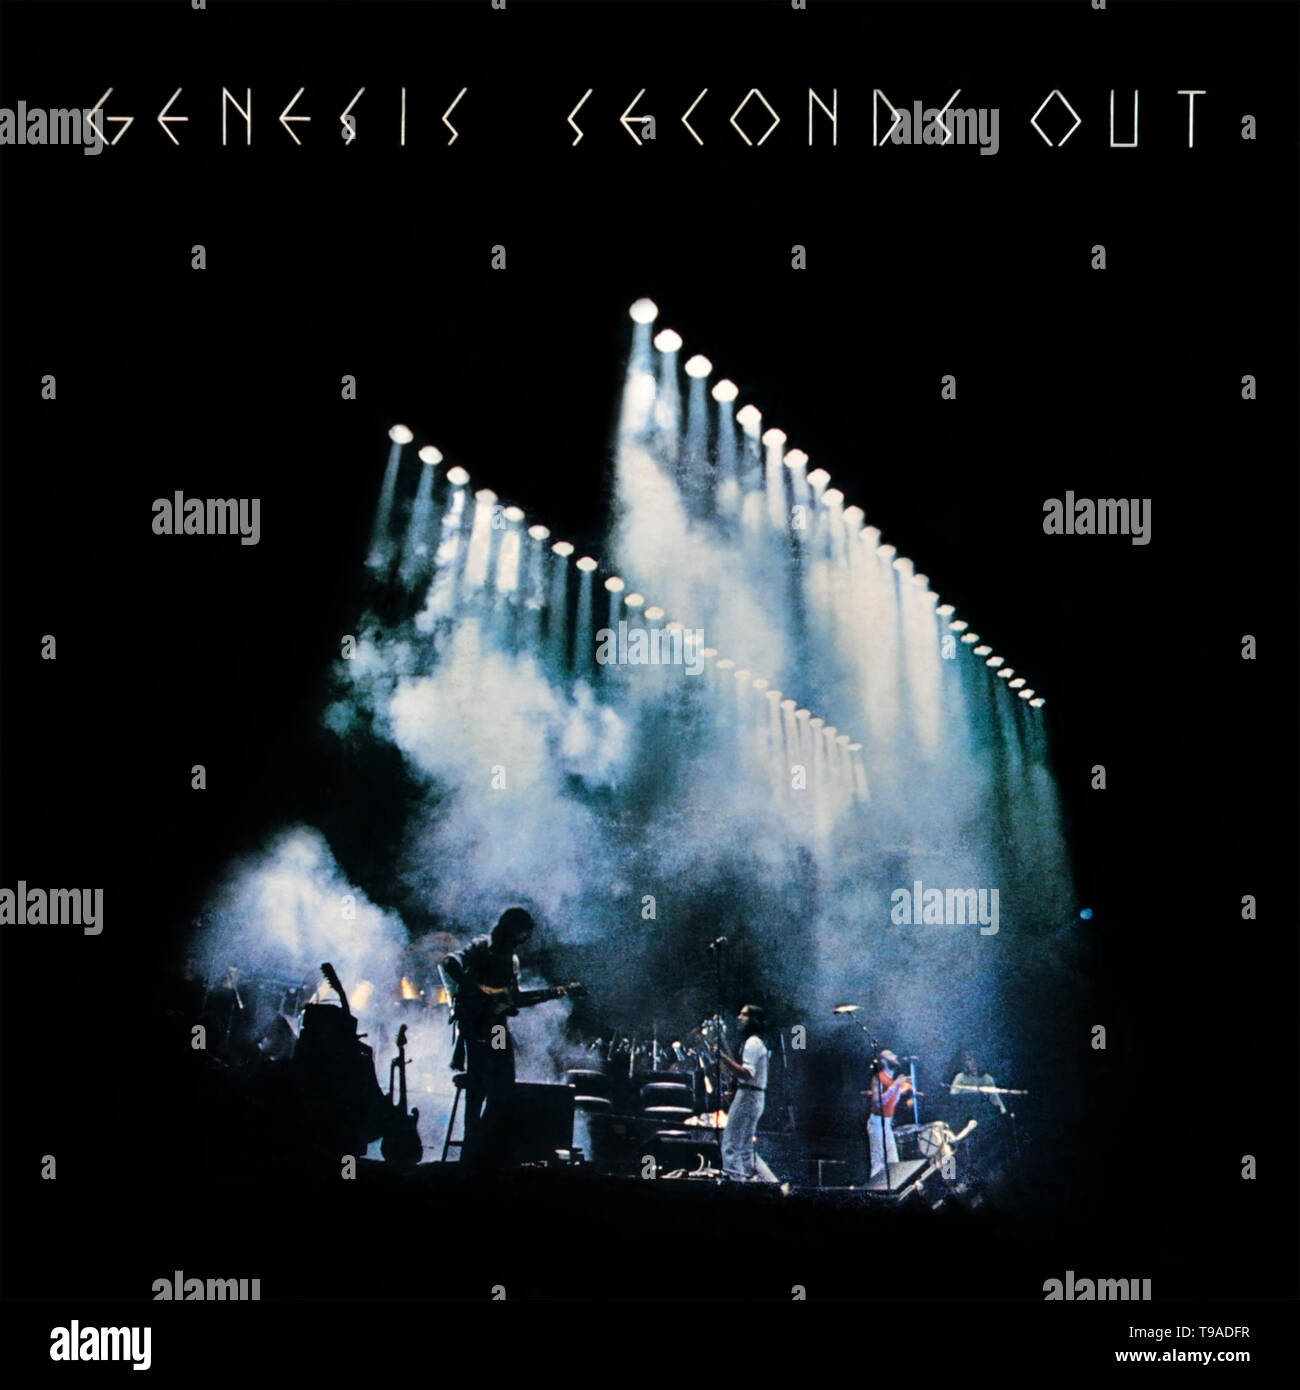 Genesis - copertina originale dell'album in vinile - Seconds out - 1977 Foto Stock